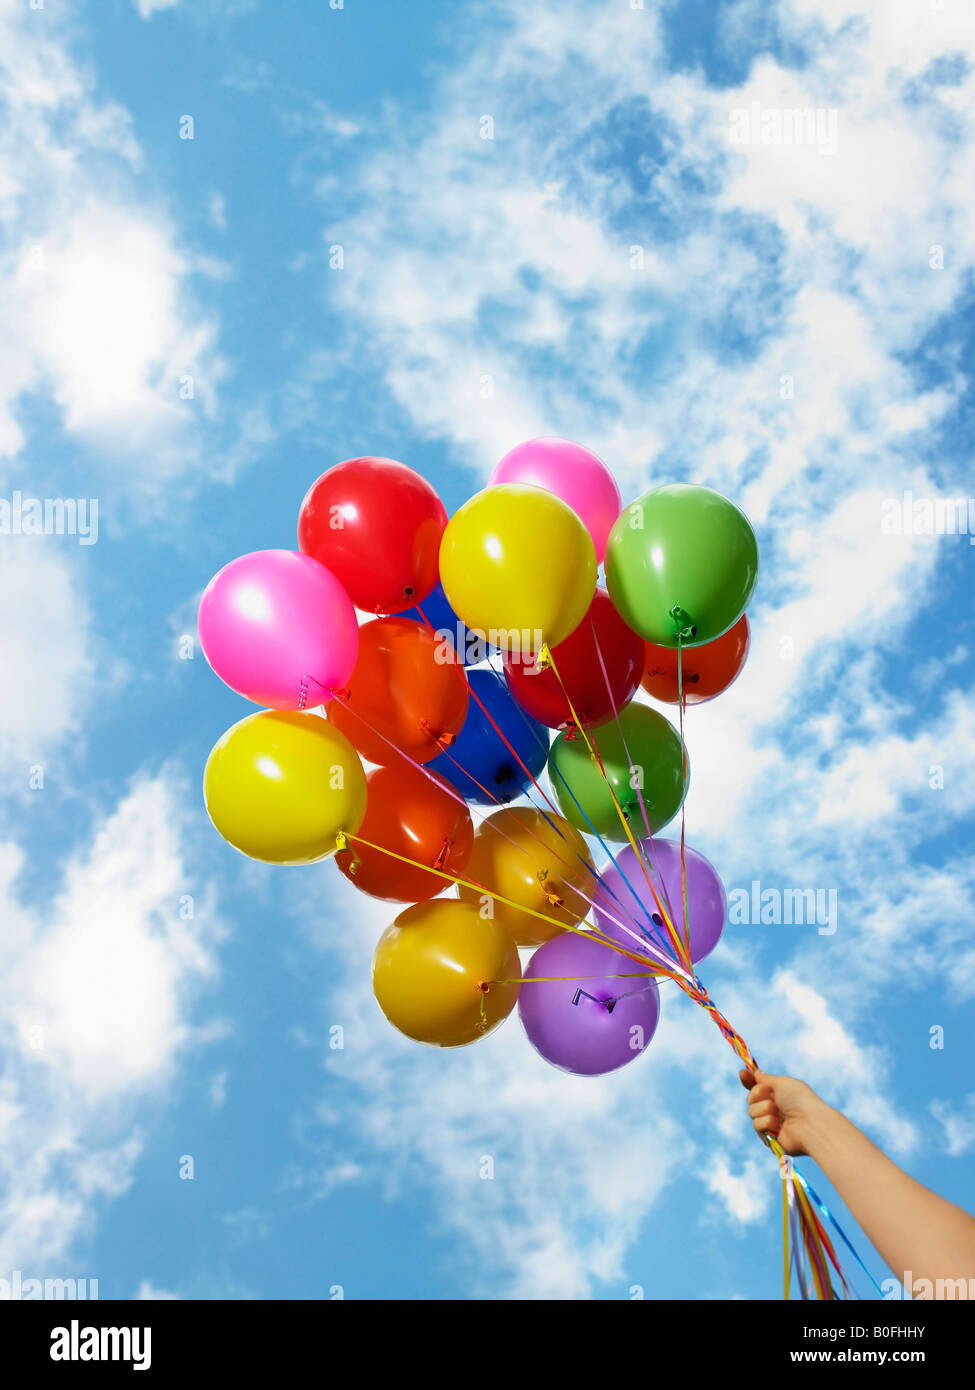 Mano sujetando globos de colores Fotografía de stock - Alamy